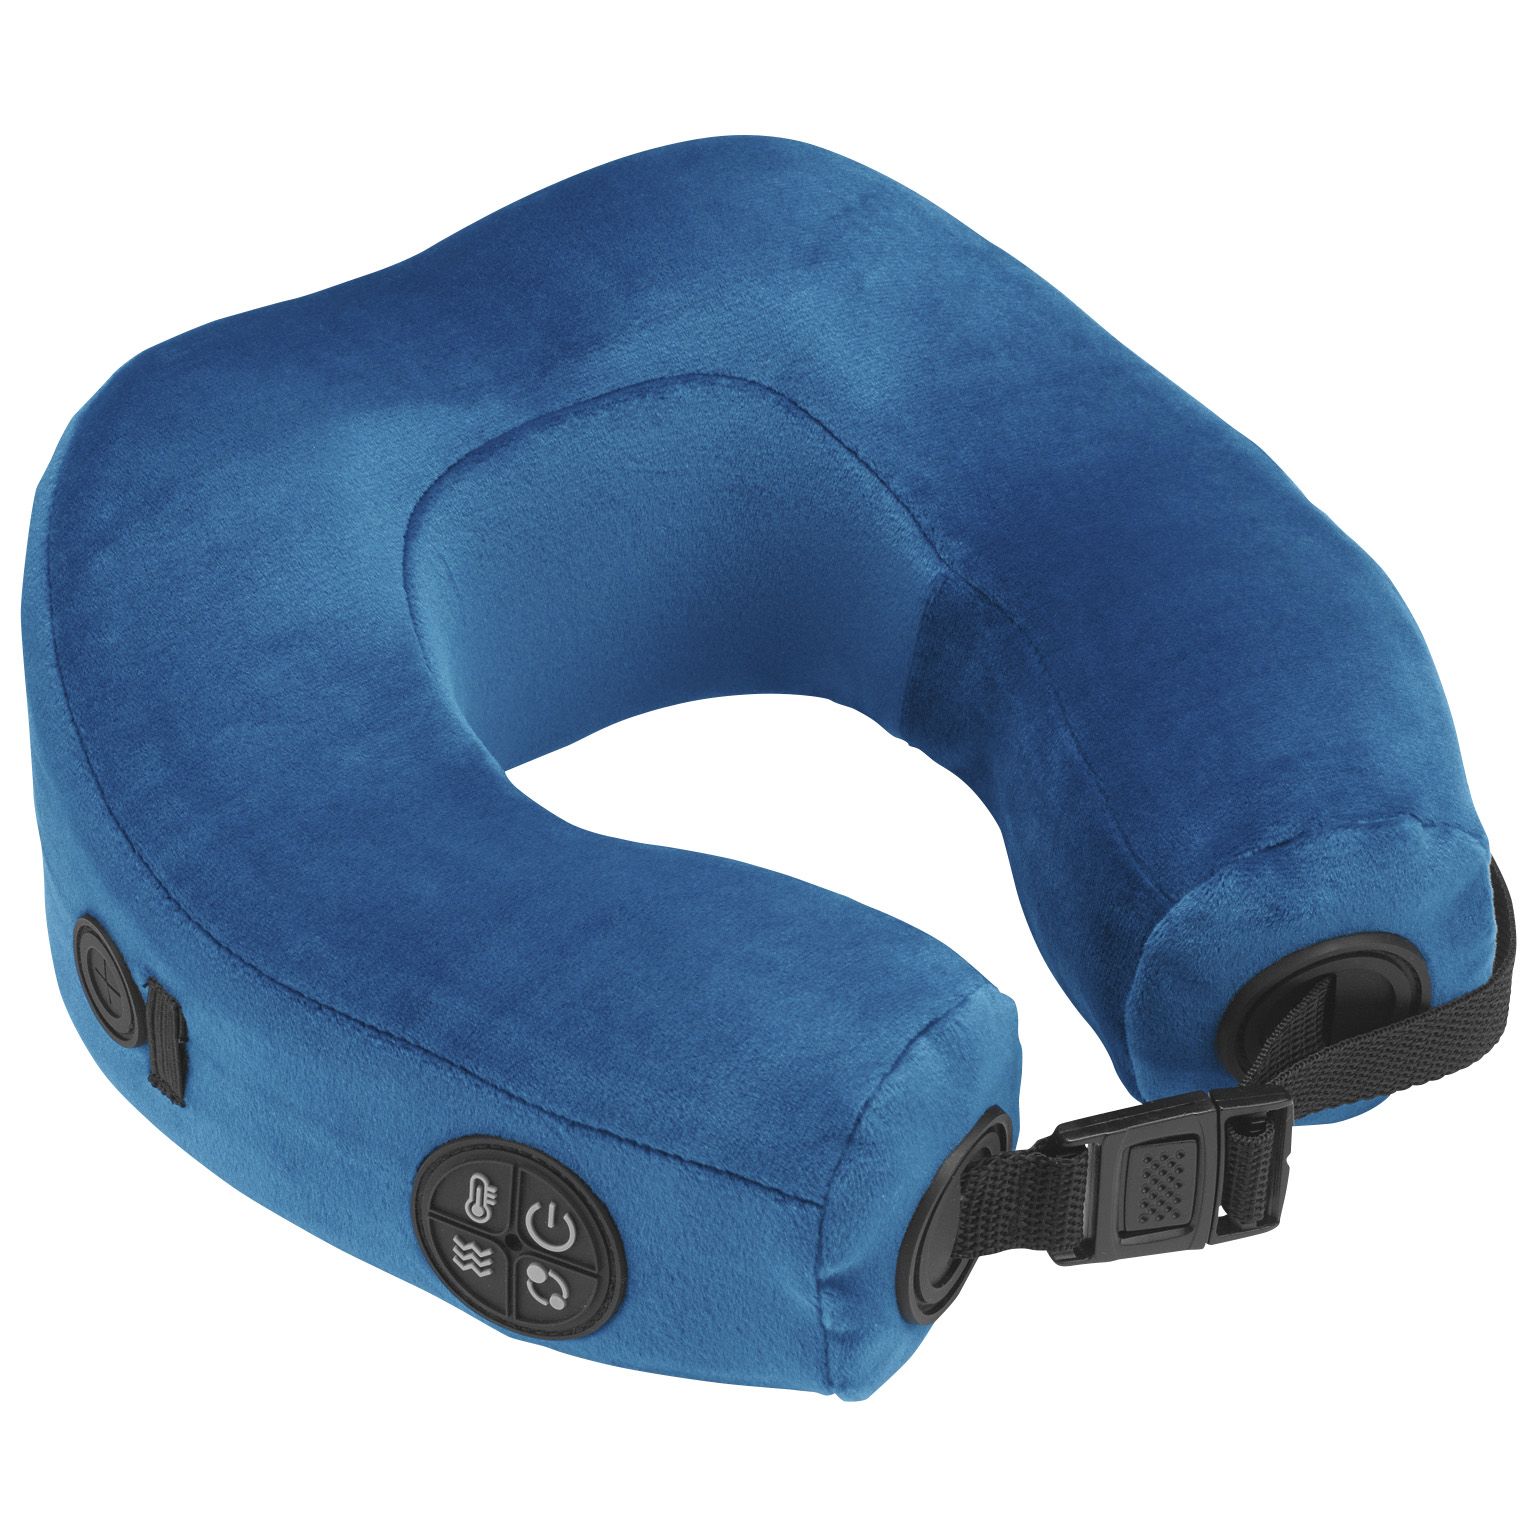 Fingerhut - Conair Rechargeable Heat Shiatsu+ Neck Massage Pillow